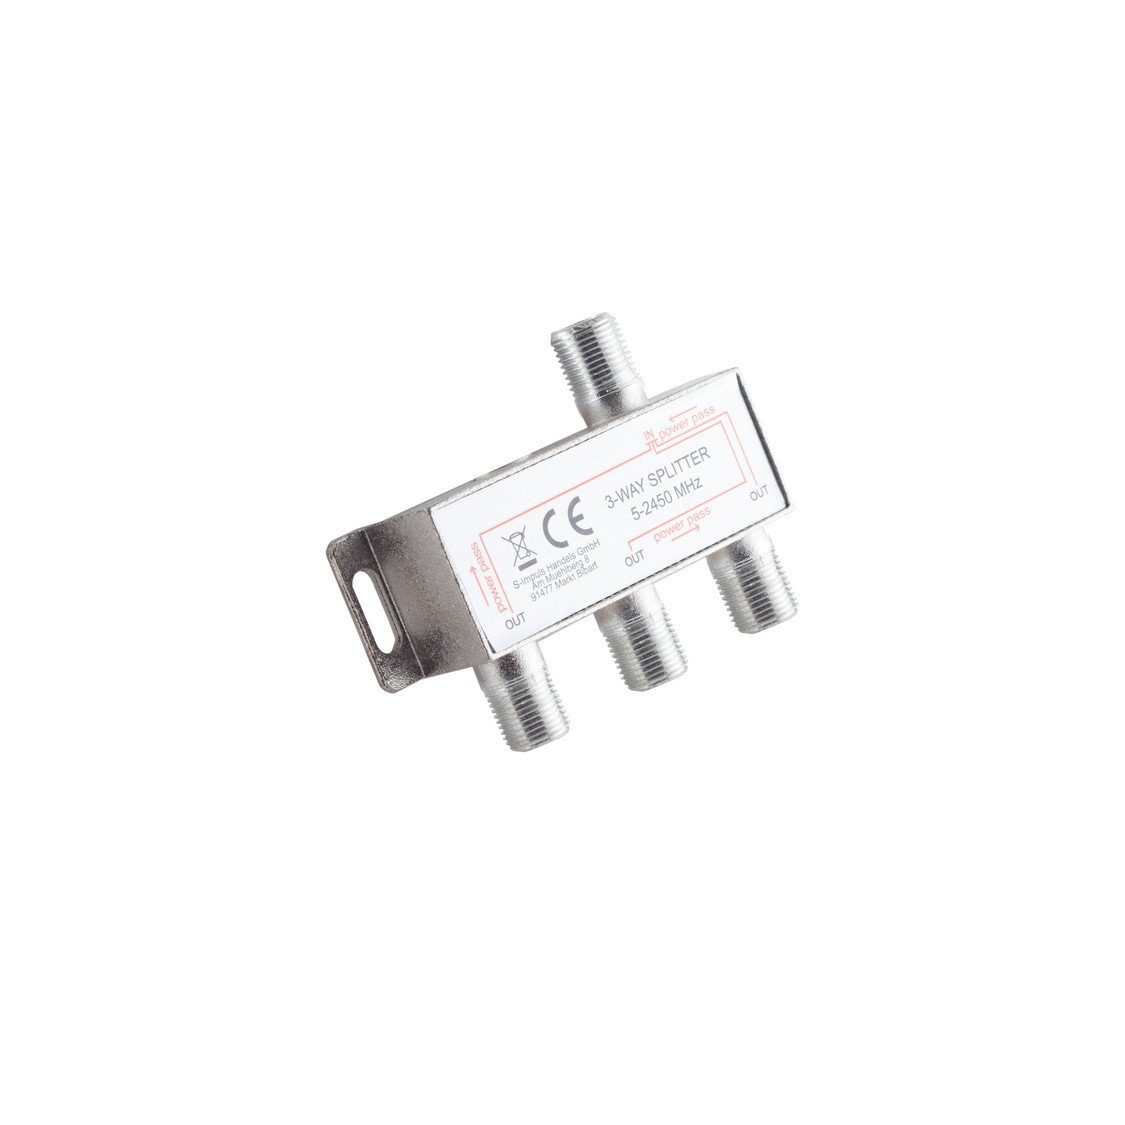 S/CONN Koax-Kabelverbinder F-Serie; 85dB DC MHz 3-fach; connectivity® Stammverteiler maximum 5-2400